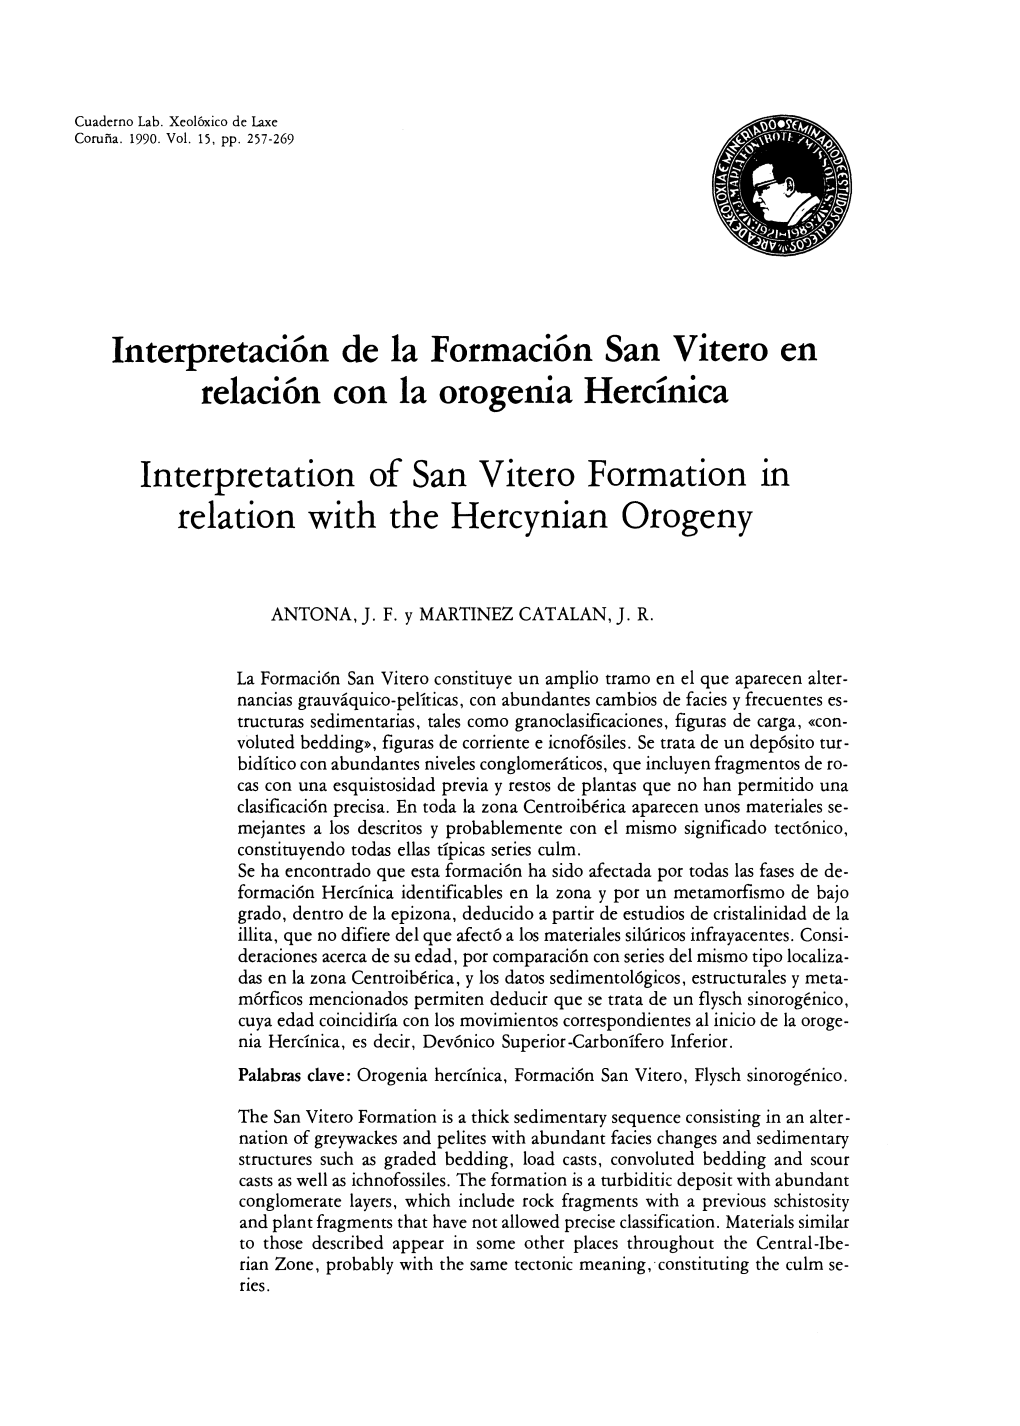 Interpretación De La Formación San Vitero En Relación Con La Orogenia Hercínica